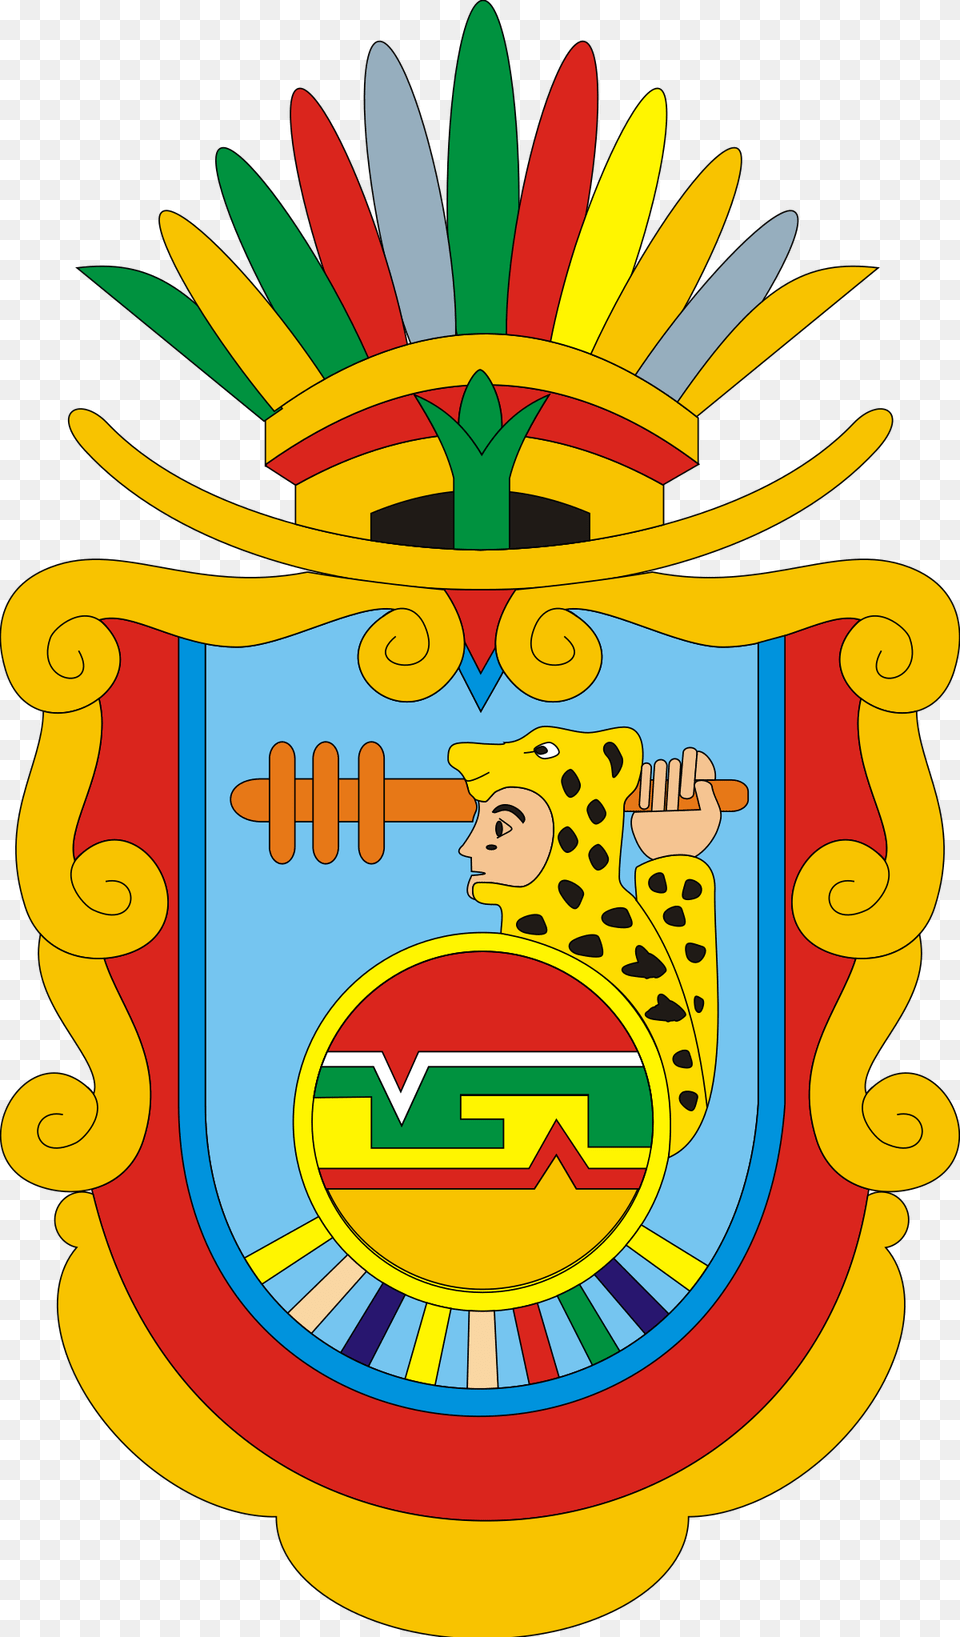 Guerrero Mexico Coat Of Arms, Emblem, Symbol, Logo, Dynamite Free Png Download